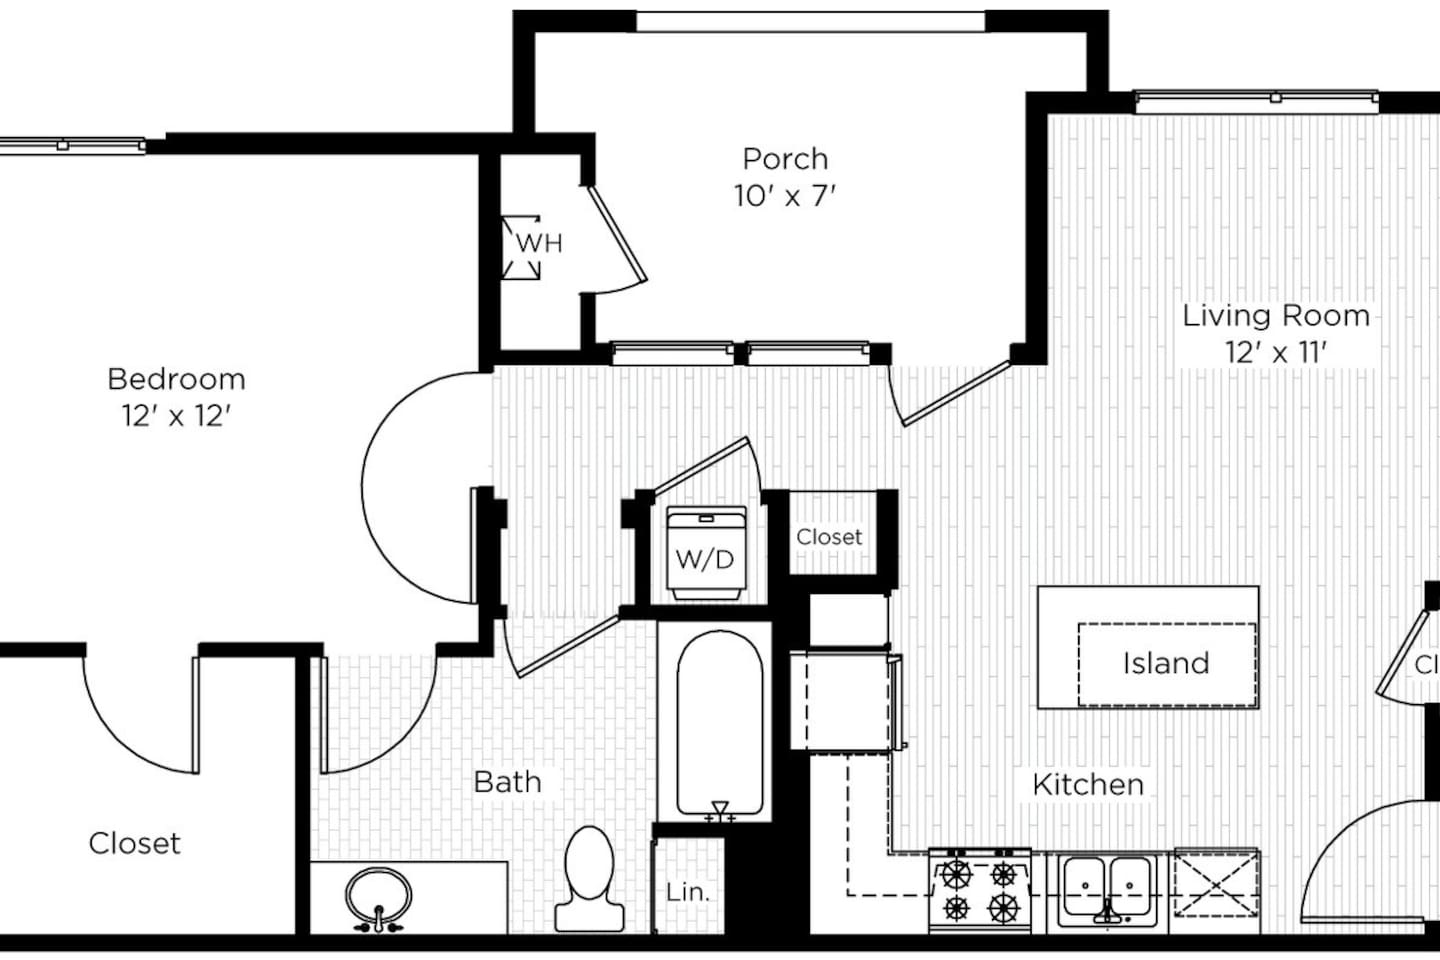 Floorplan diagram for 1AA, showing 1 bedroom